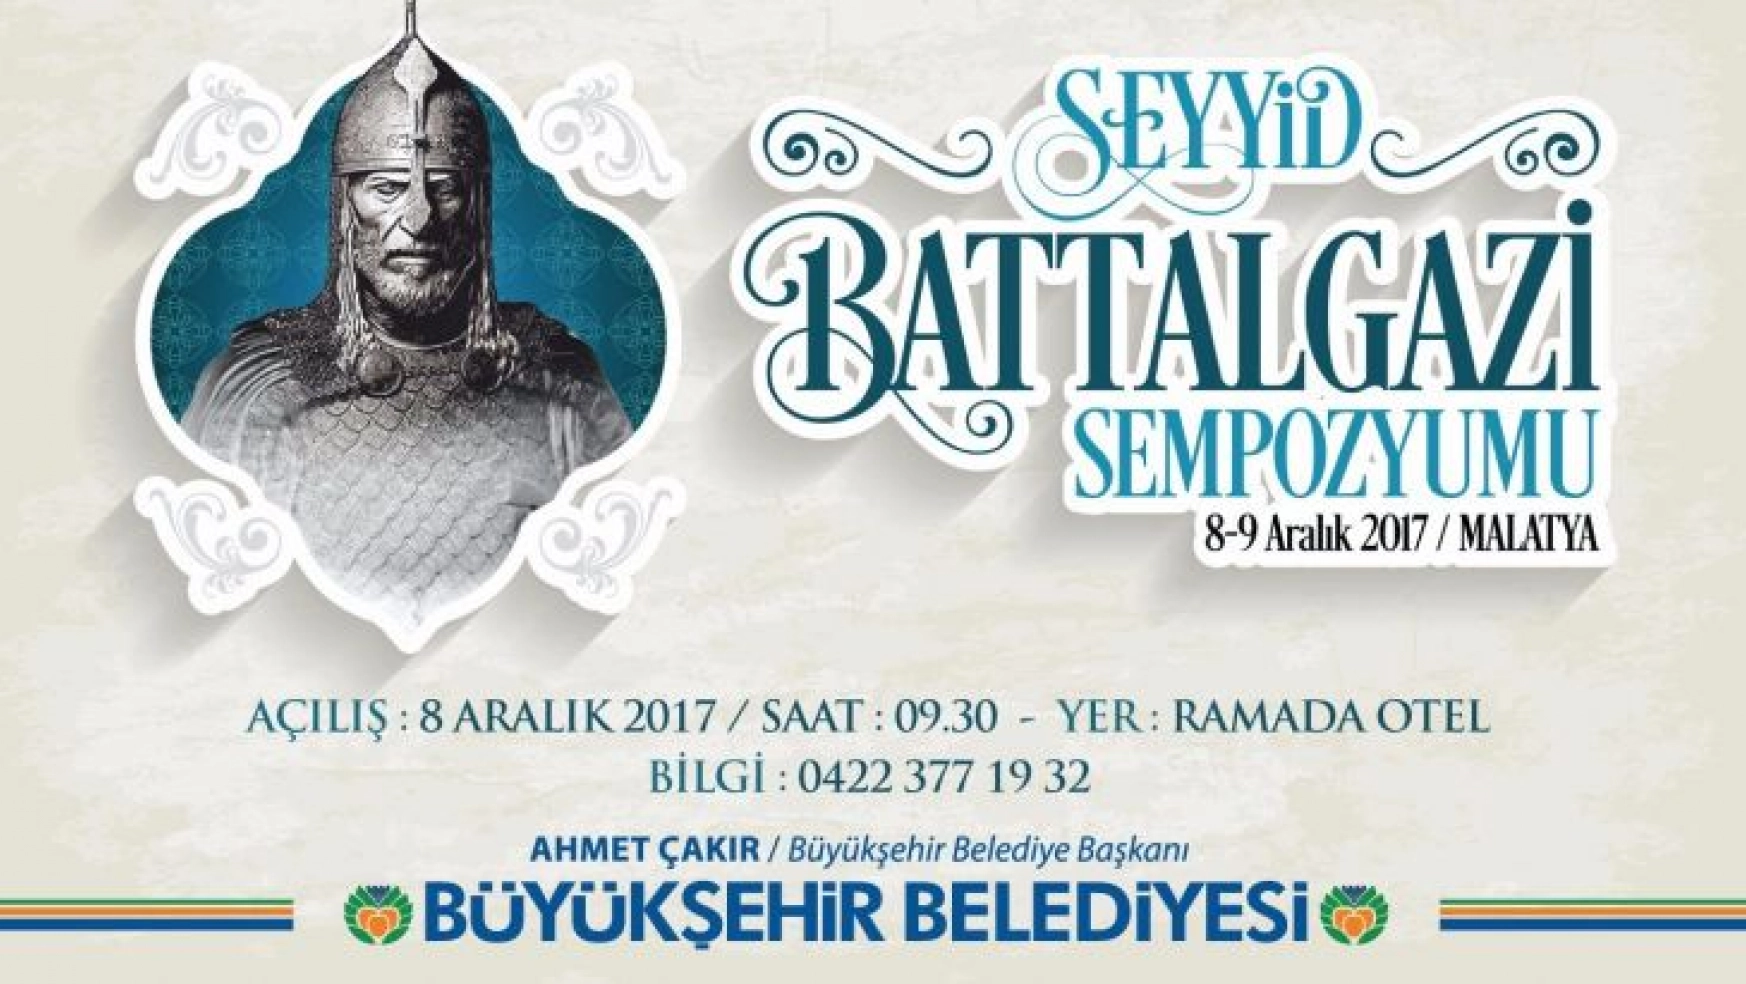 'Seyyid Battalgazi' sempozyumu düzenlenecek